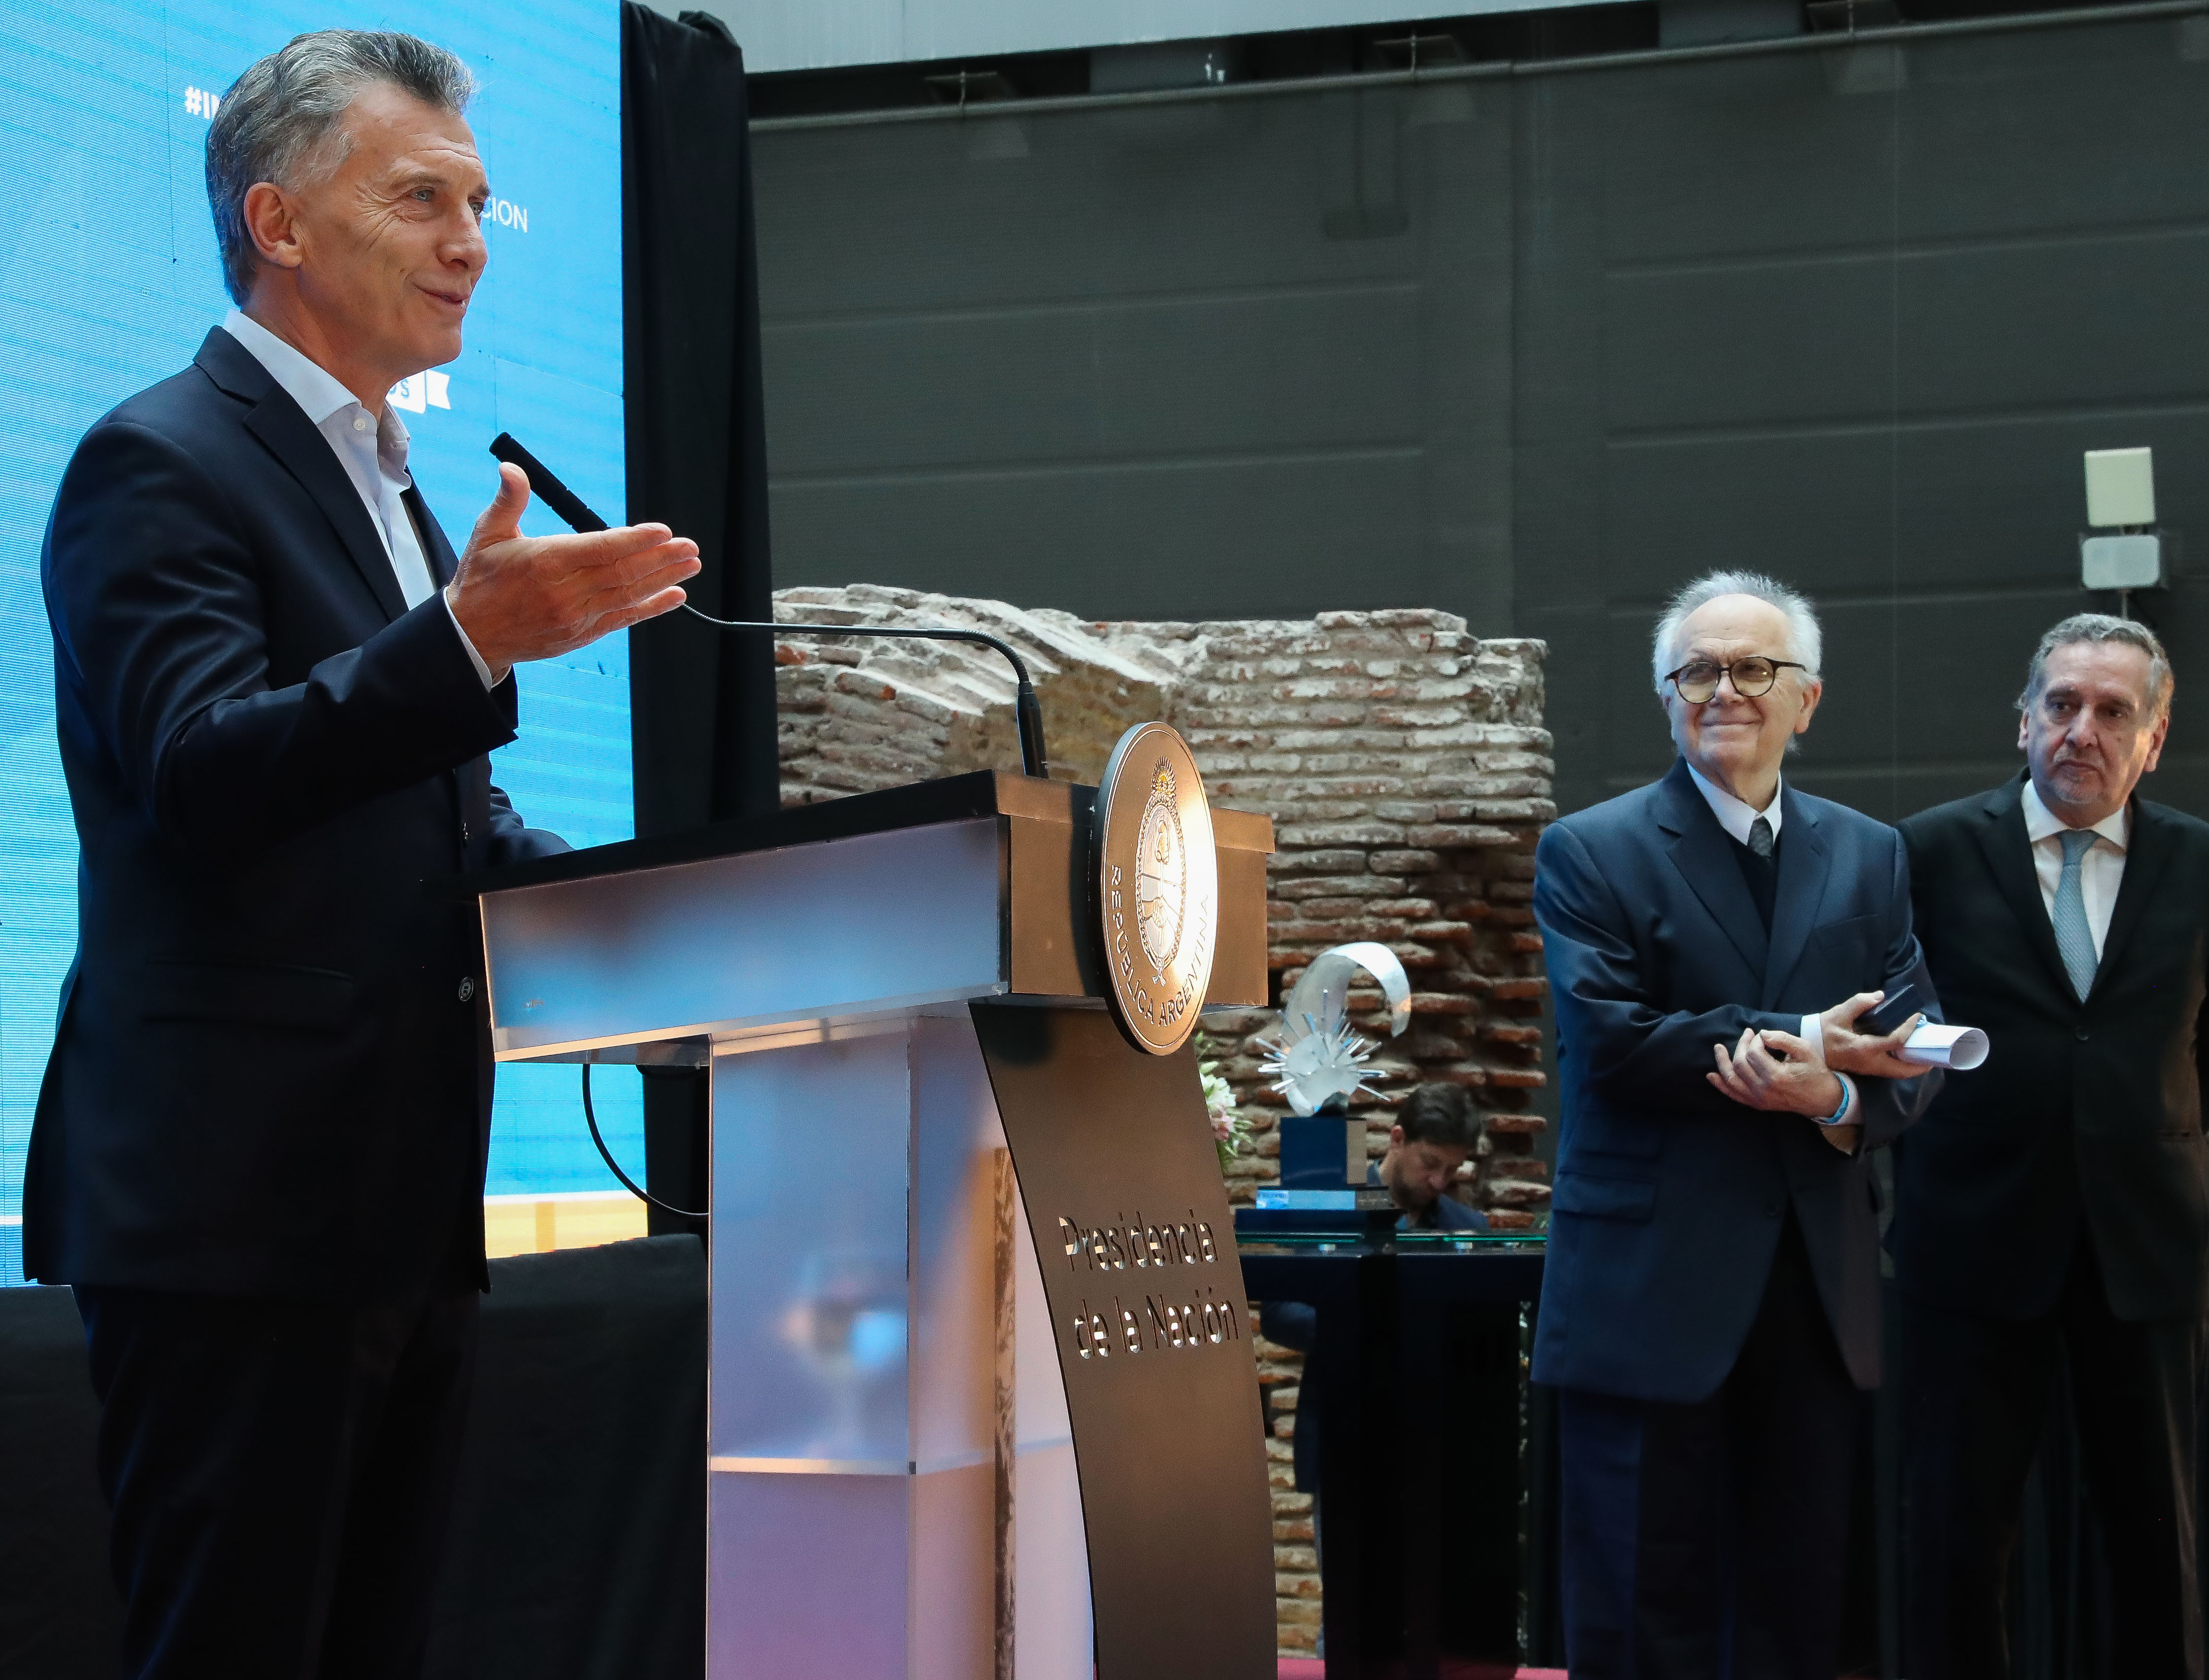 El Presidente Macri entregó al físico Conrado Varotto el premio “Investigador de la Nación”.